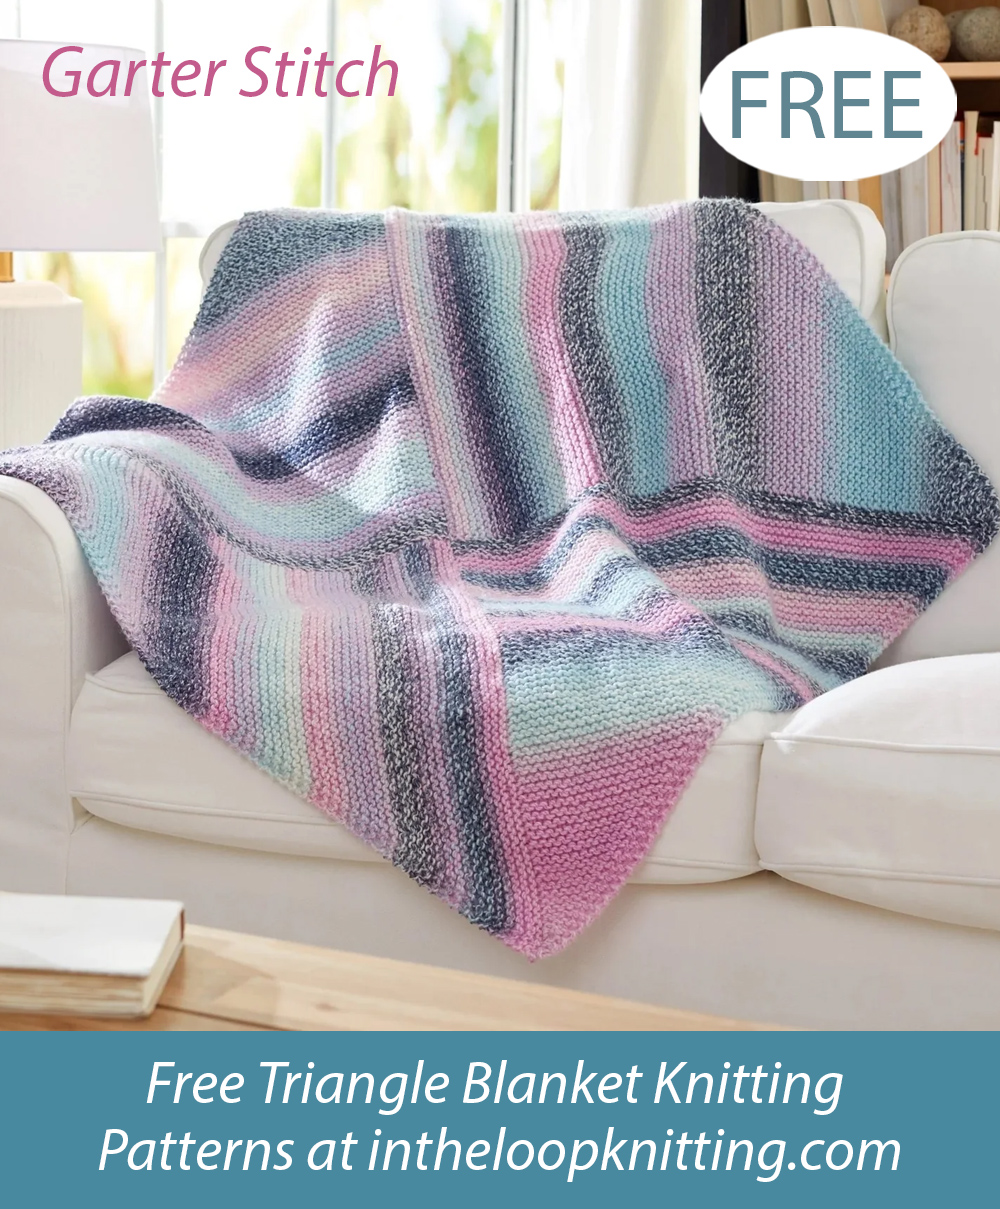 Free Square Blanket Knitting Pattern